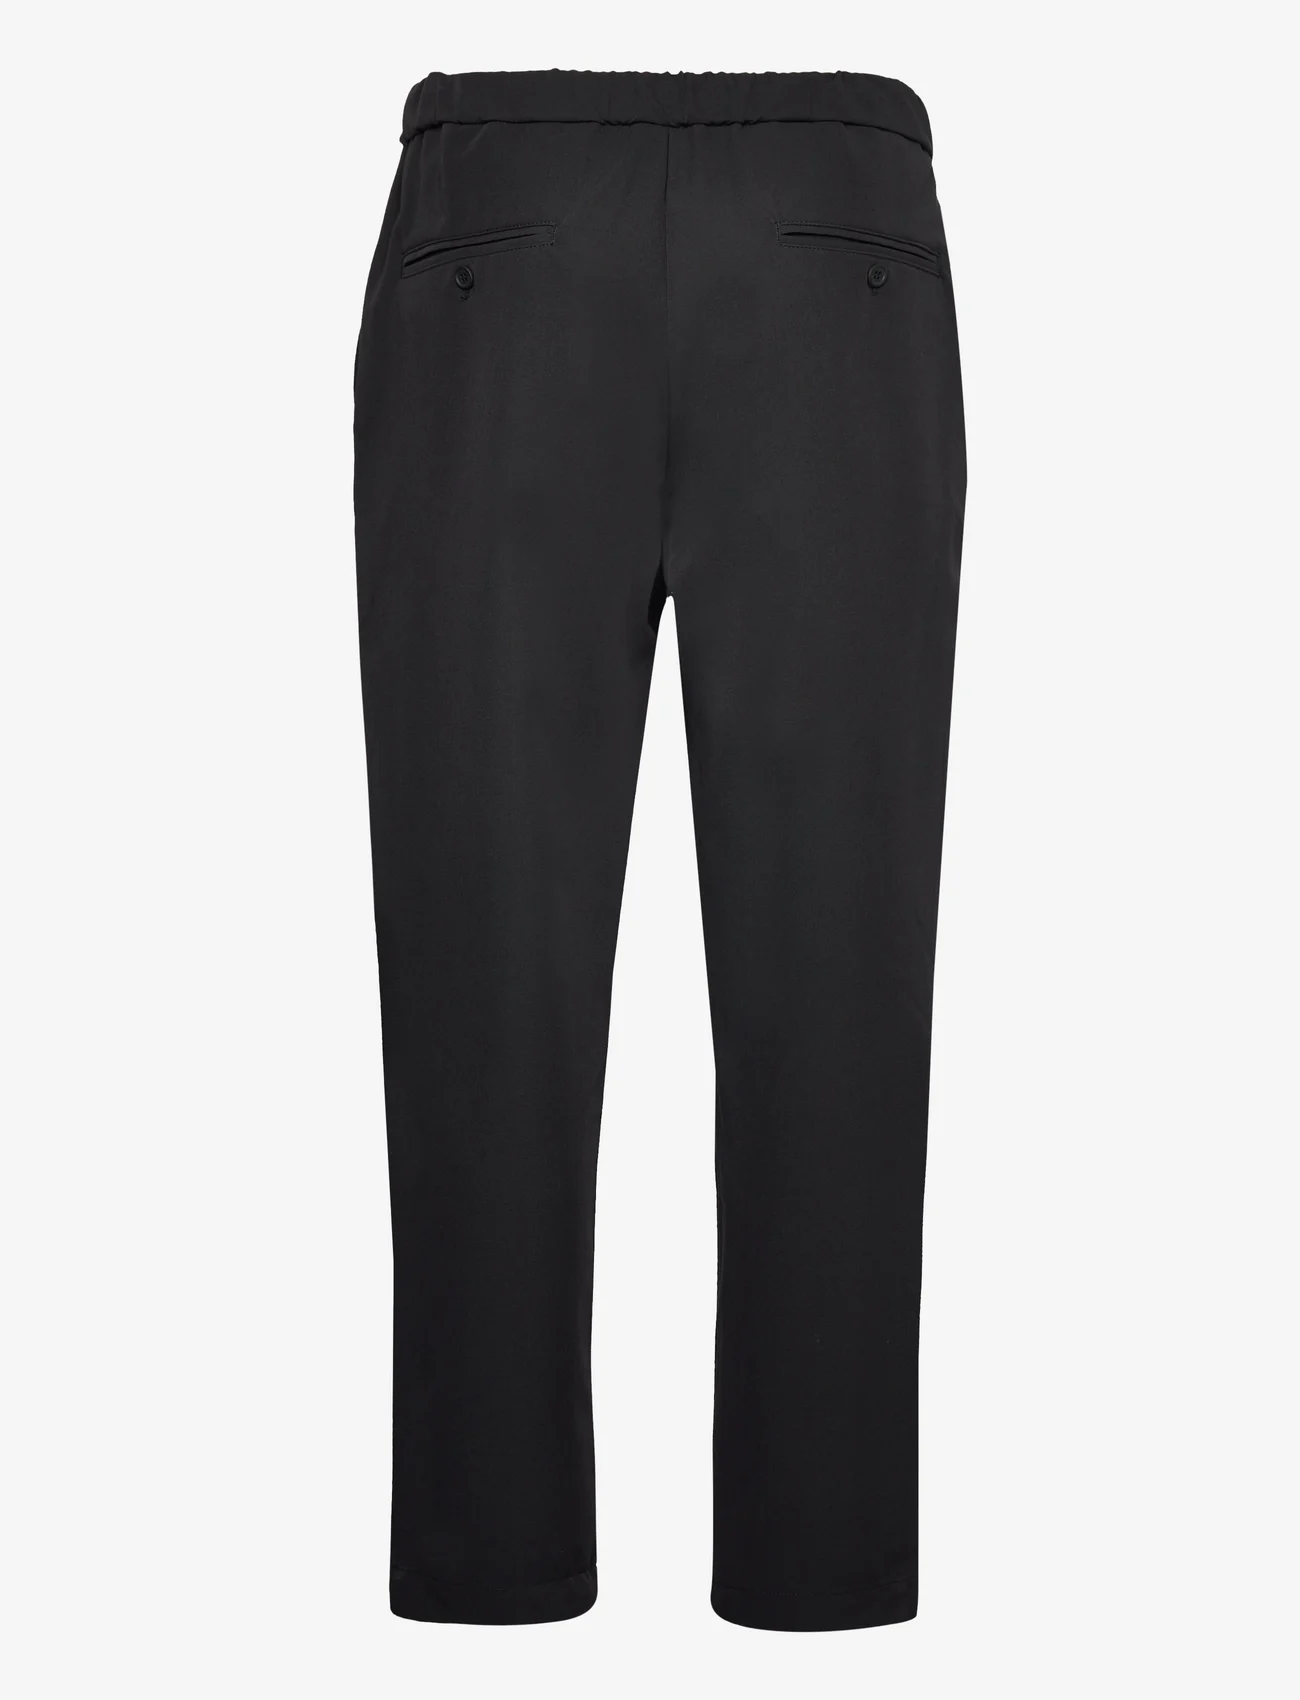 Garment Project - Dressed Pant - suit trousers - 999 black - 1